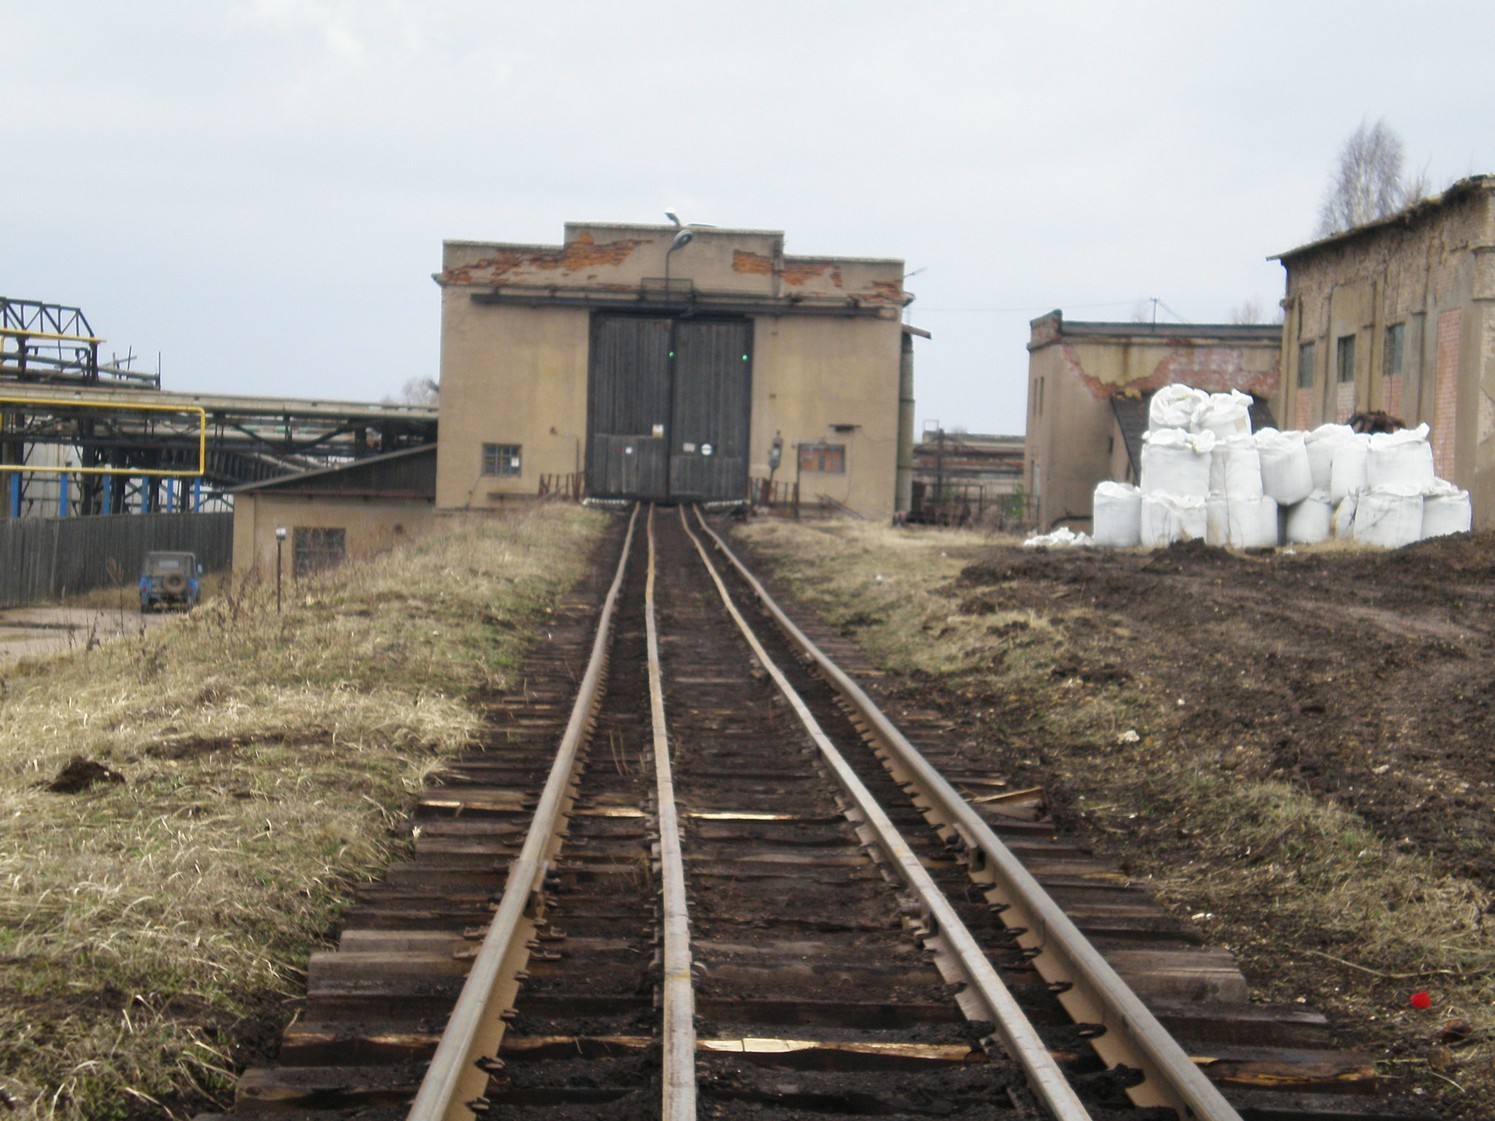 Узкоколейная железная дорога Ранцевского торфопредприятия  —  фотографии, сделанные в 2008 году (часть 1)